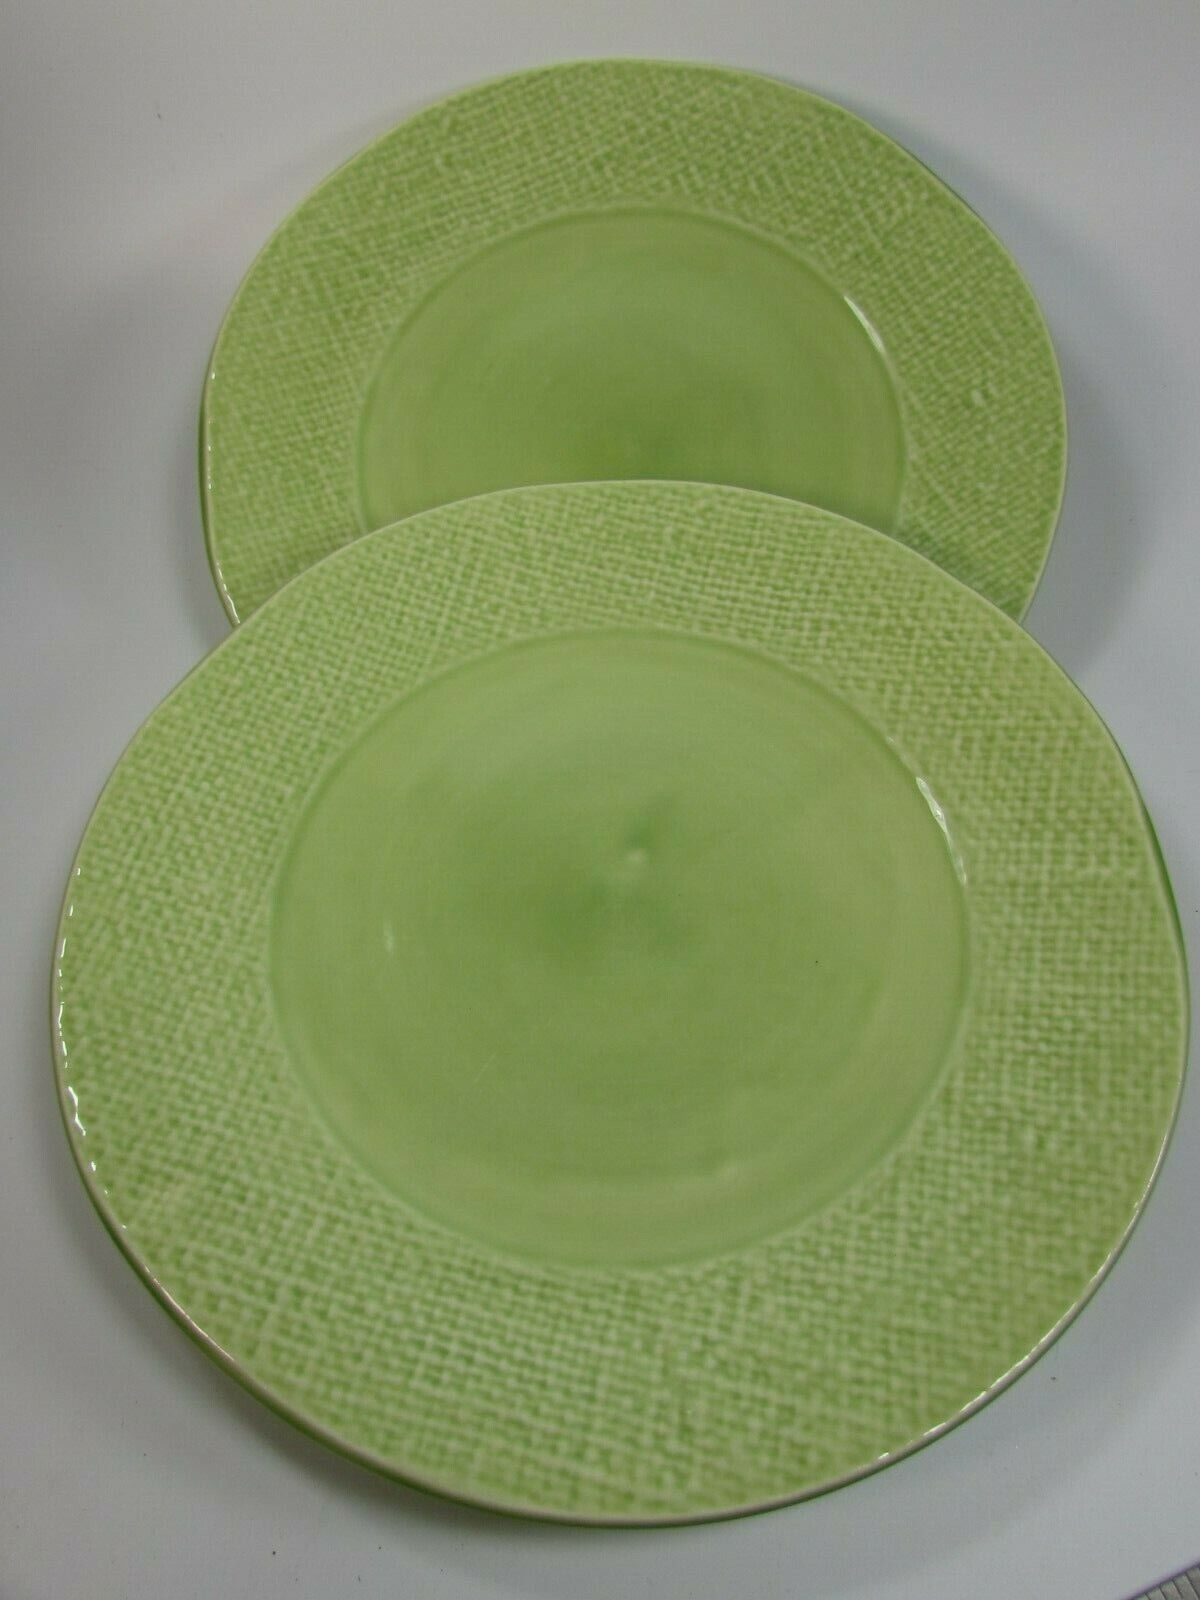 2 Ballard Designs Dinner Plate Pale Green Woven Weave 28872 Plates - $59.39